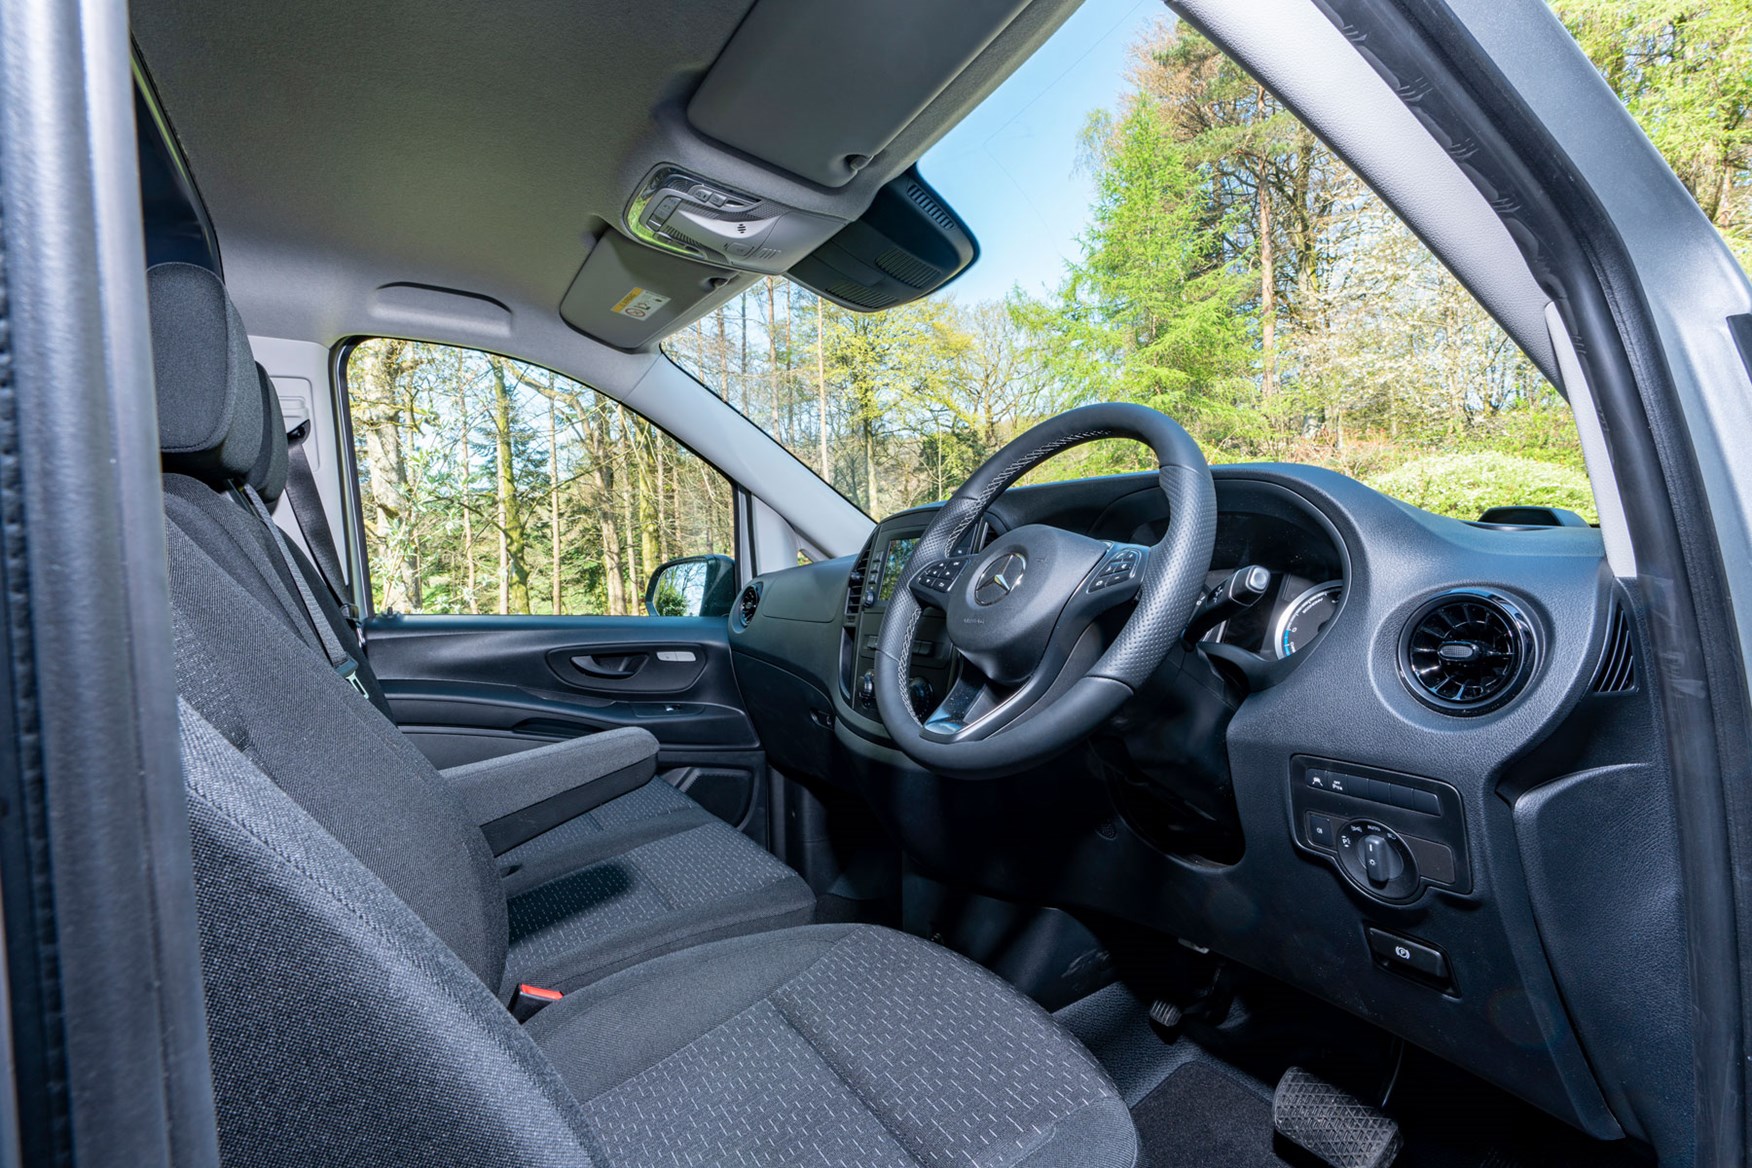 Mercedes-Benz eVito cabin interior